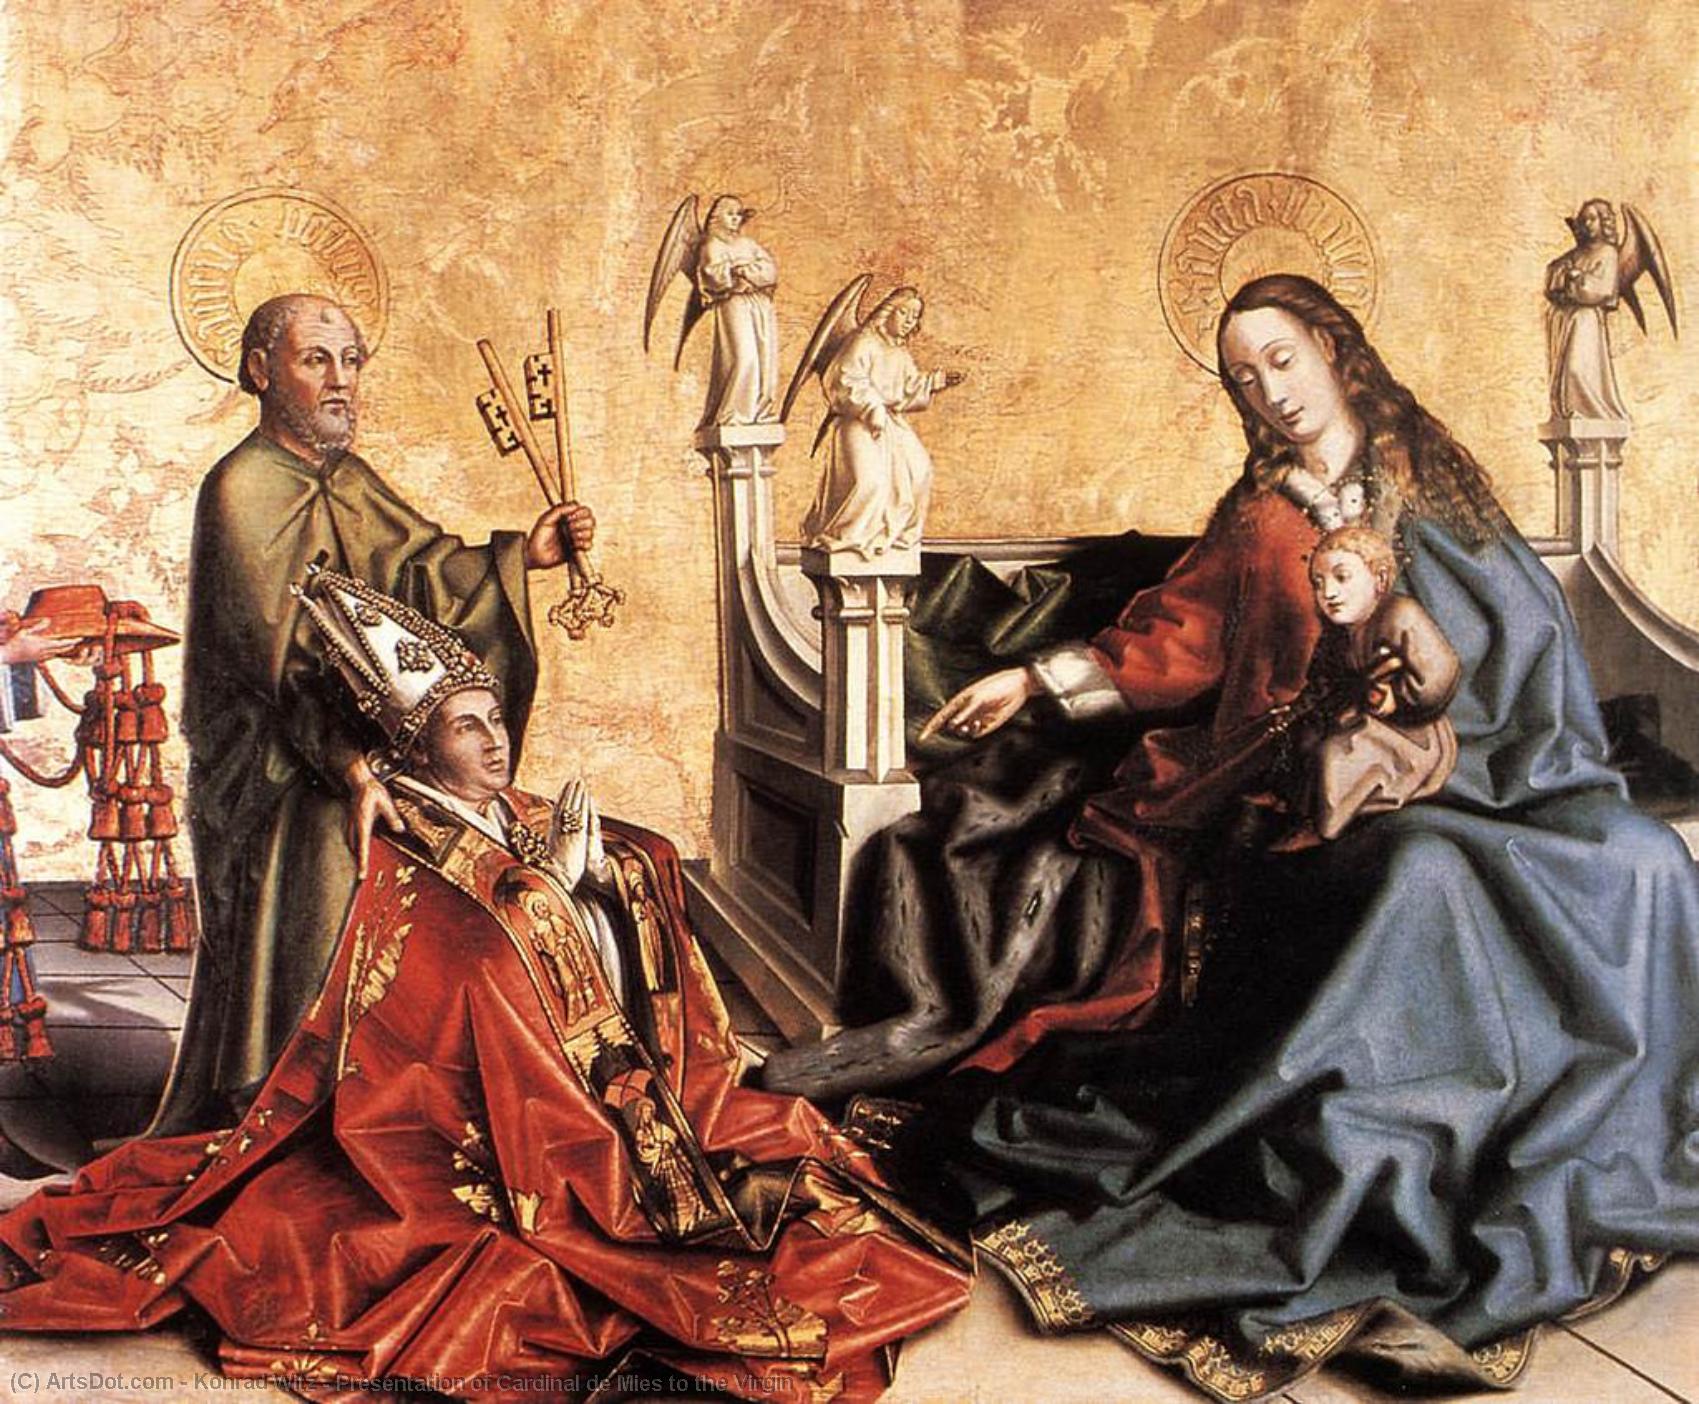 Comprar Reproducciones De Arte Del Museo Presentación del Cardenal de Mies a la Virgen, 1443 de Konrad Witz (1400-1446, Germany) | ArtsDot.com